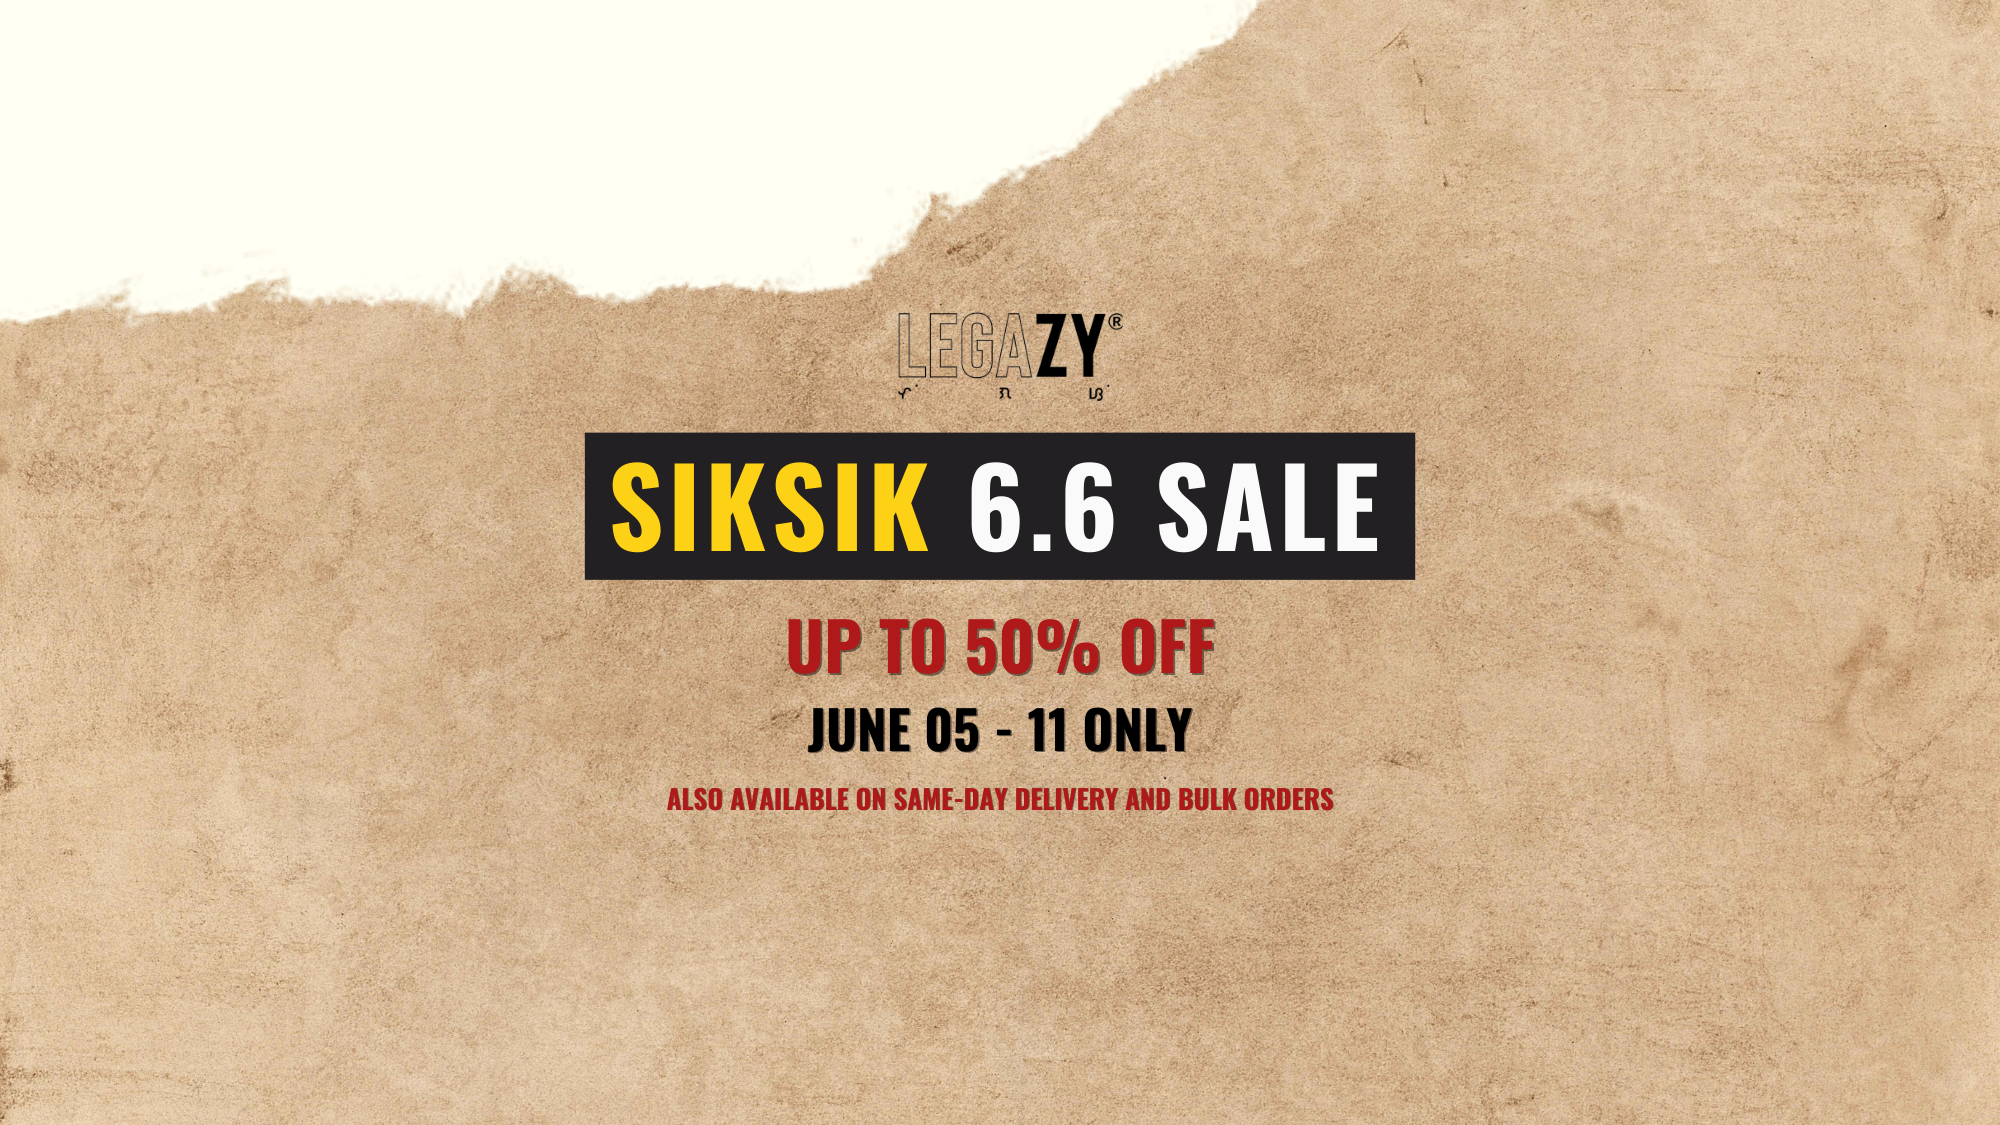 Legazy SIKSIK 6.6 Sale